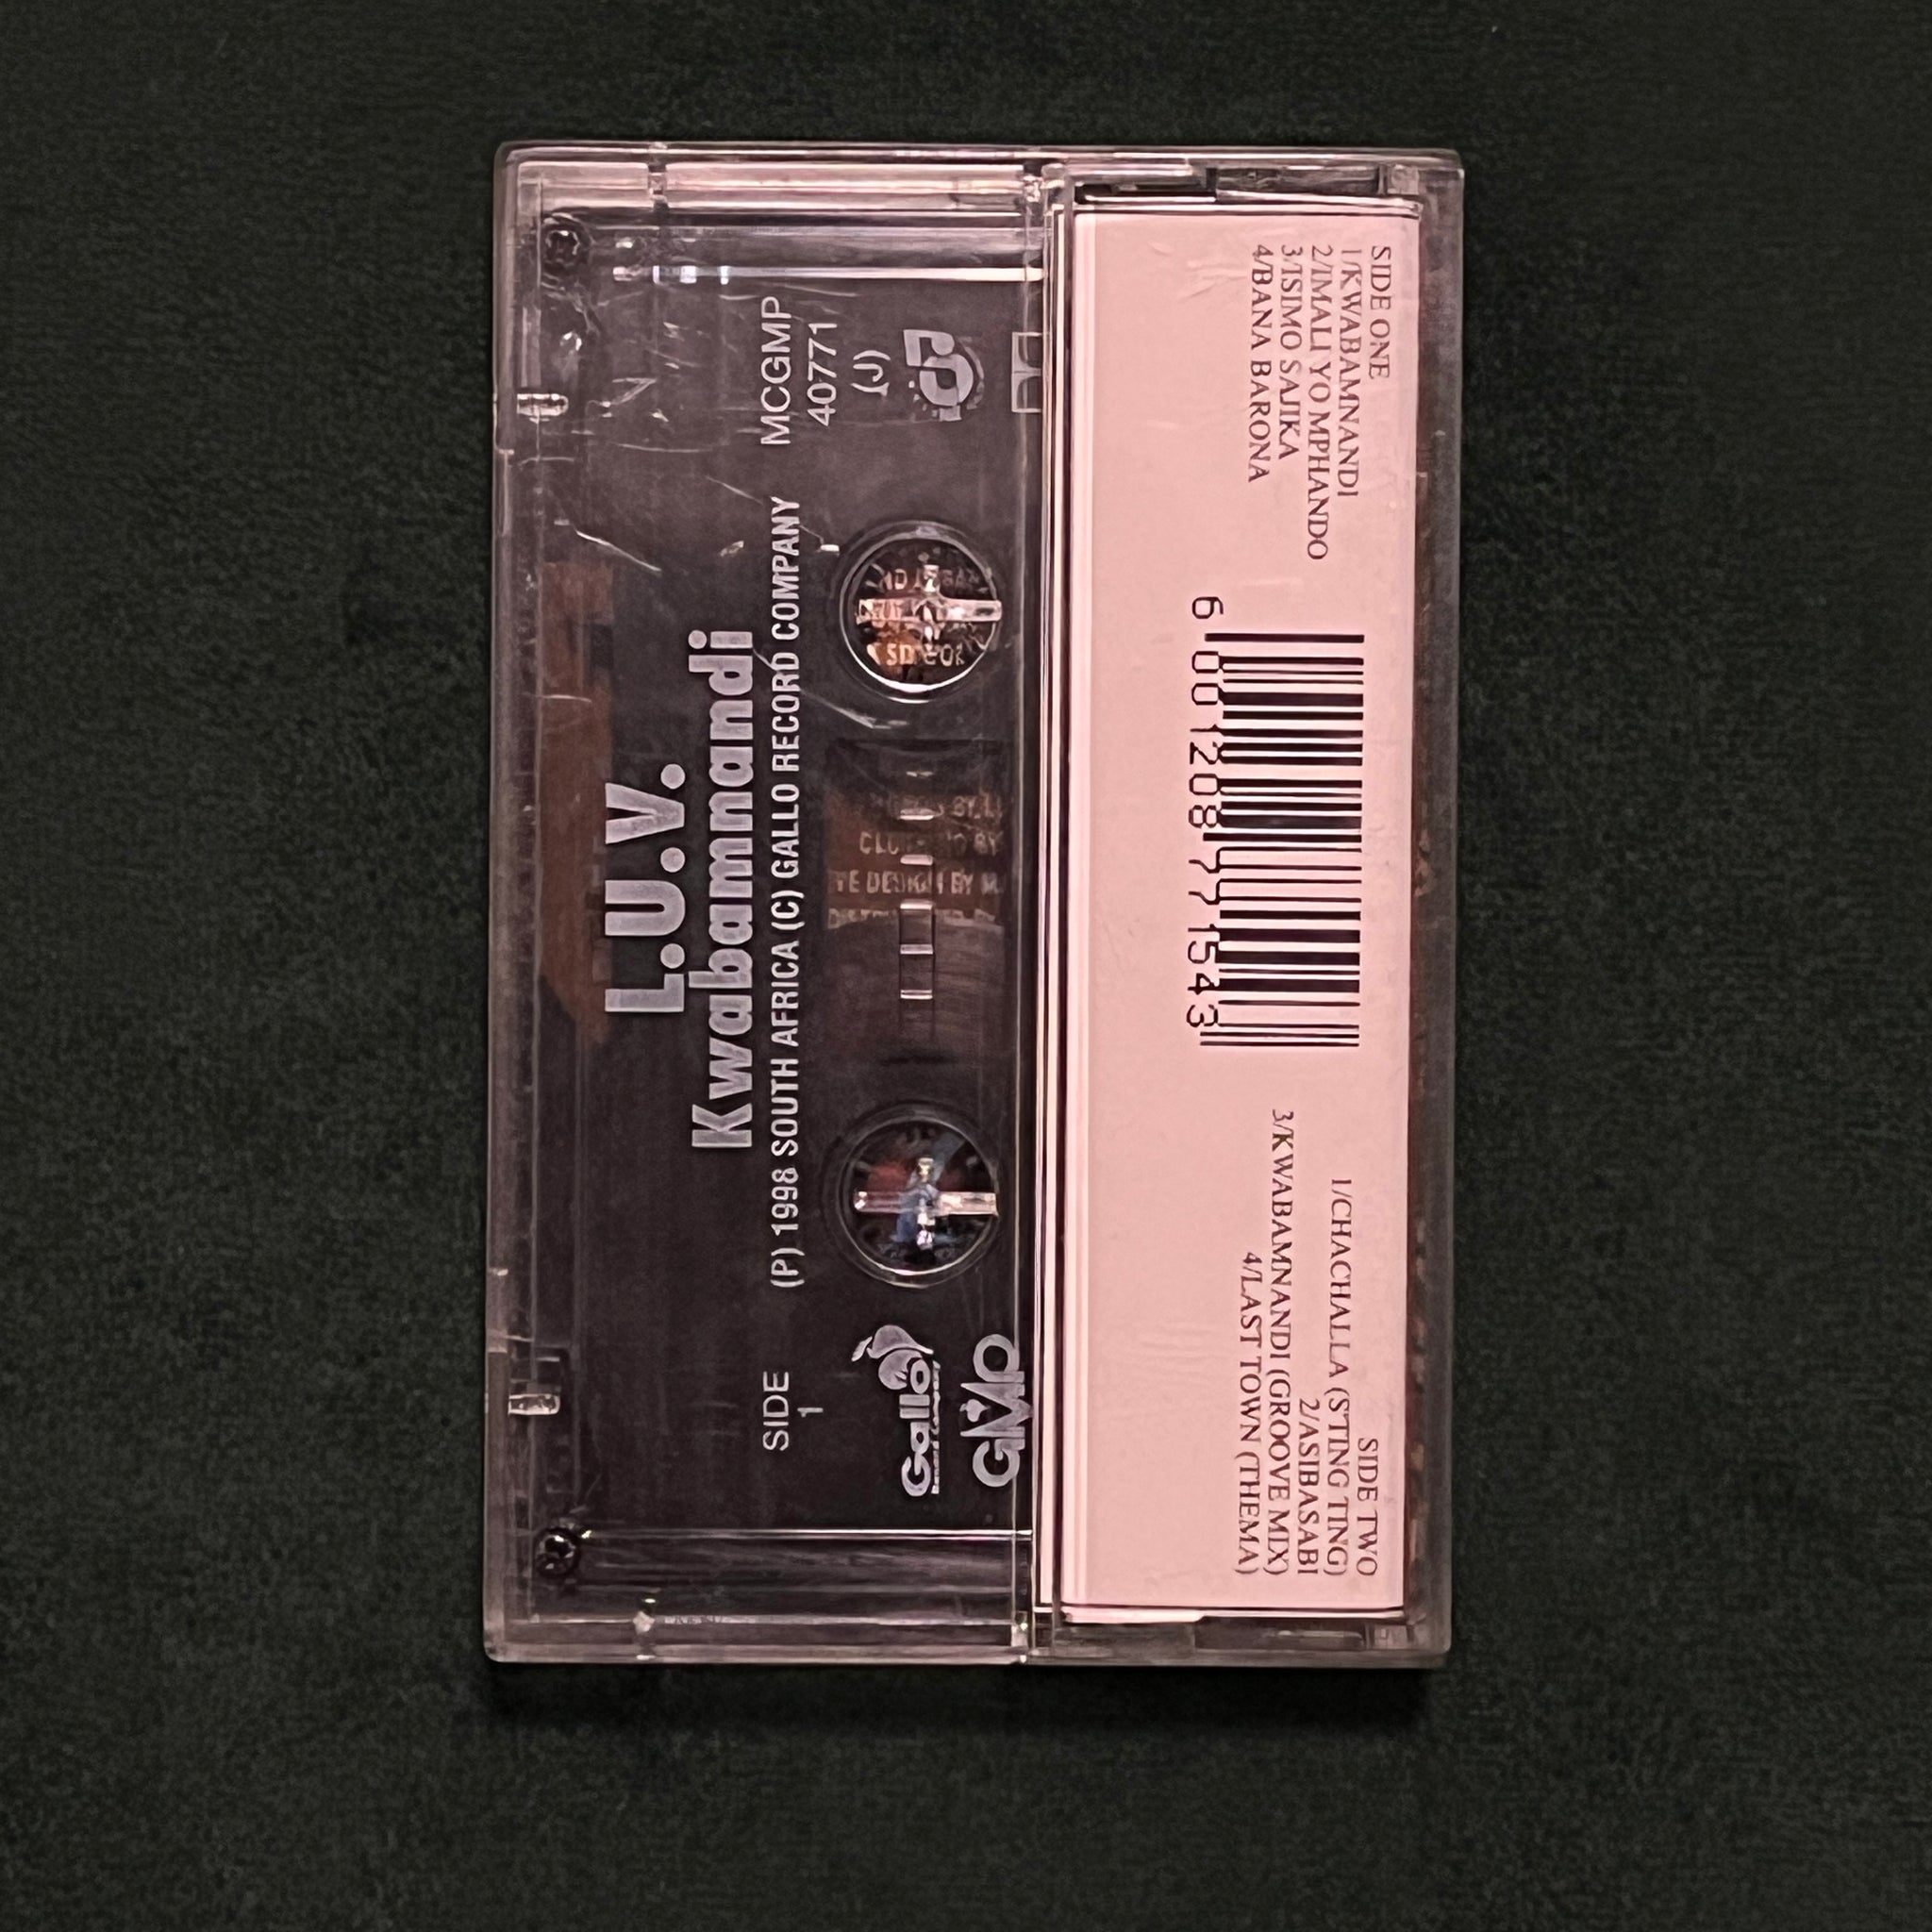 L.U.V. (At Last Out On Bail – Kwabamnandi (cassette)